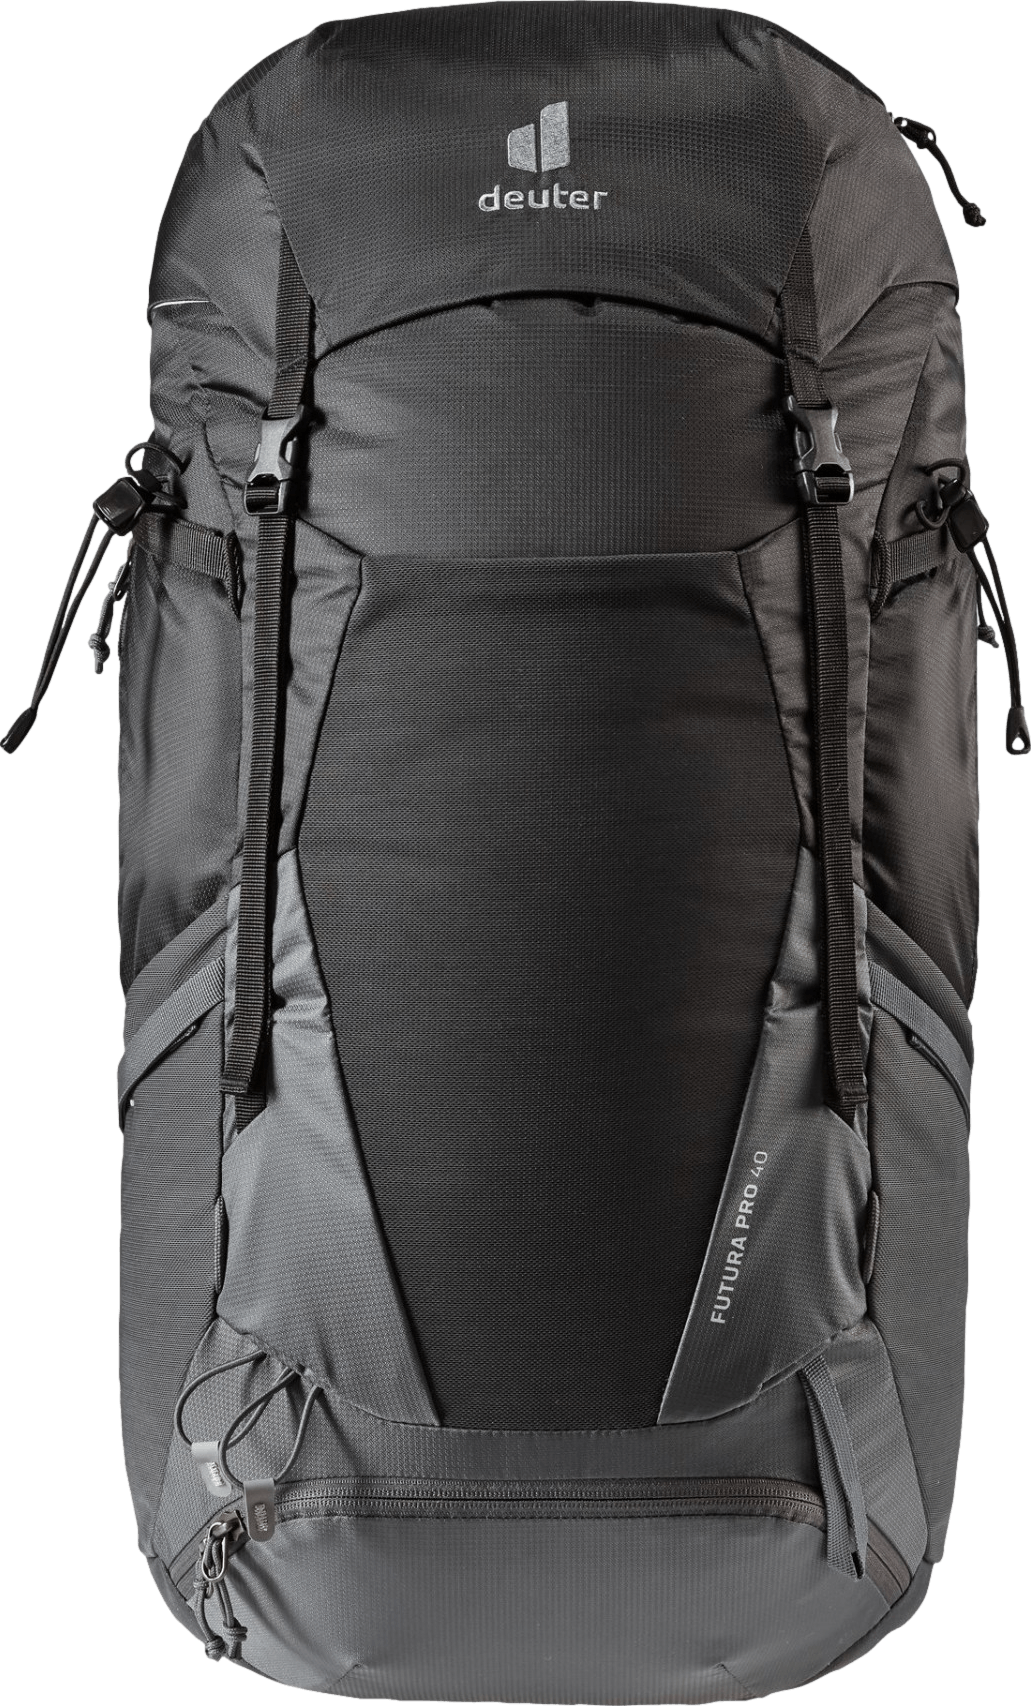 Deuter Unisex – Adult's Futura 32 Hiking Backpack